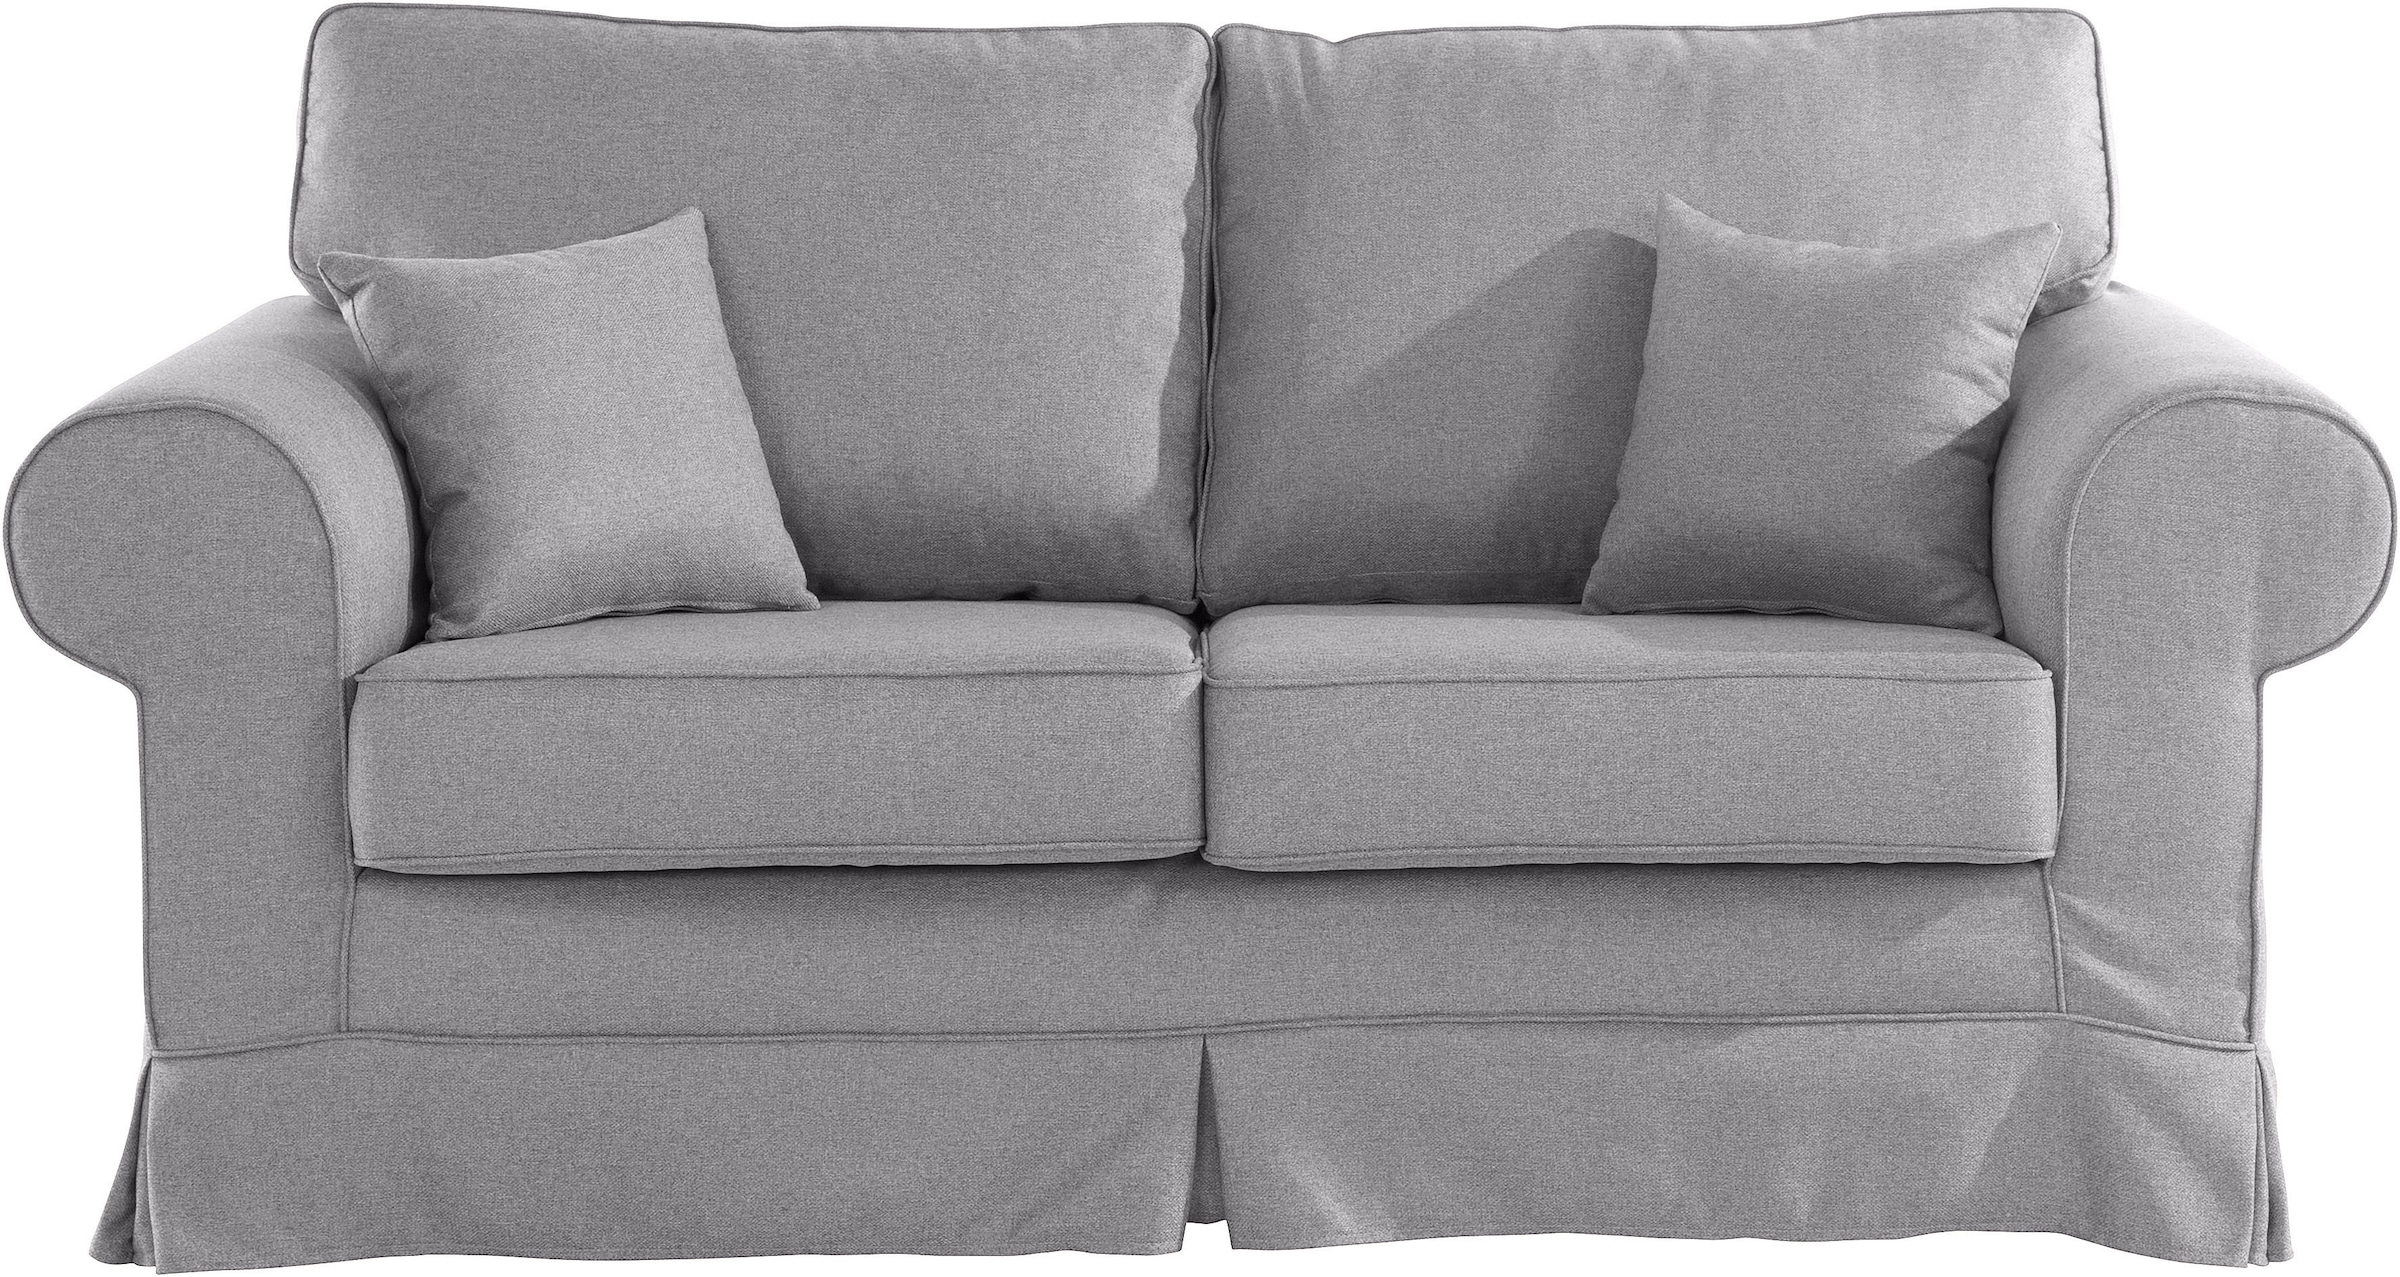 online Stretch Couchbezug kaufen Trendige